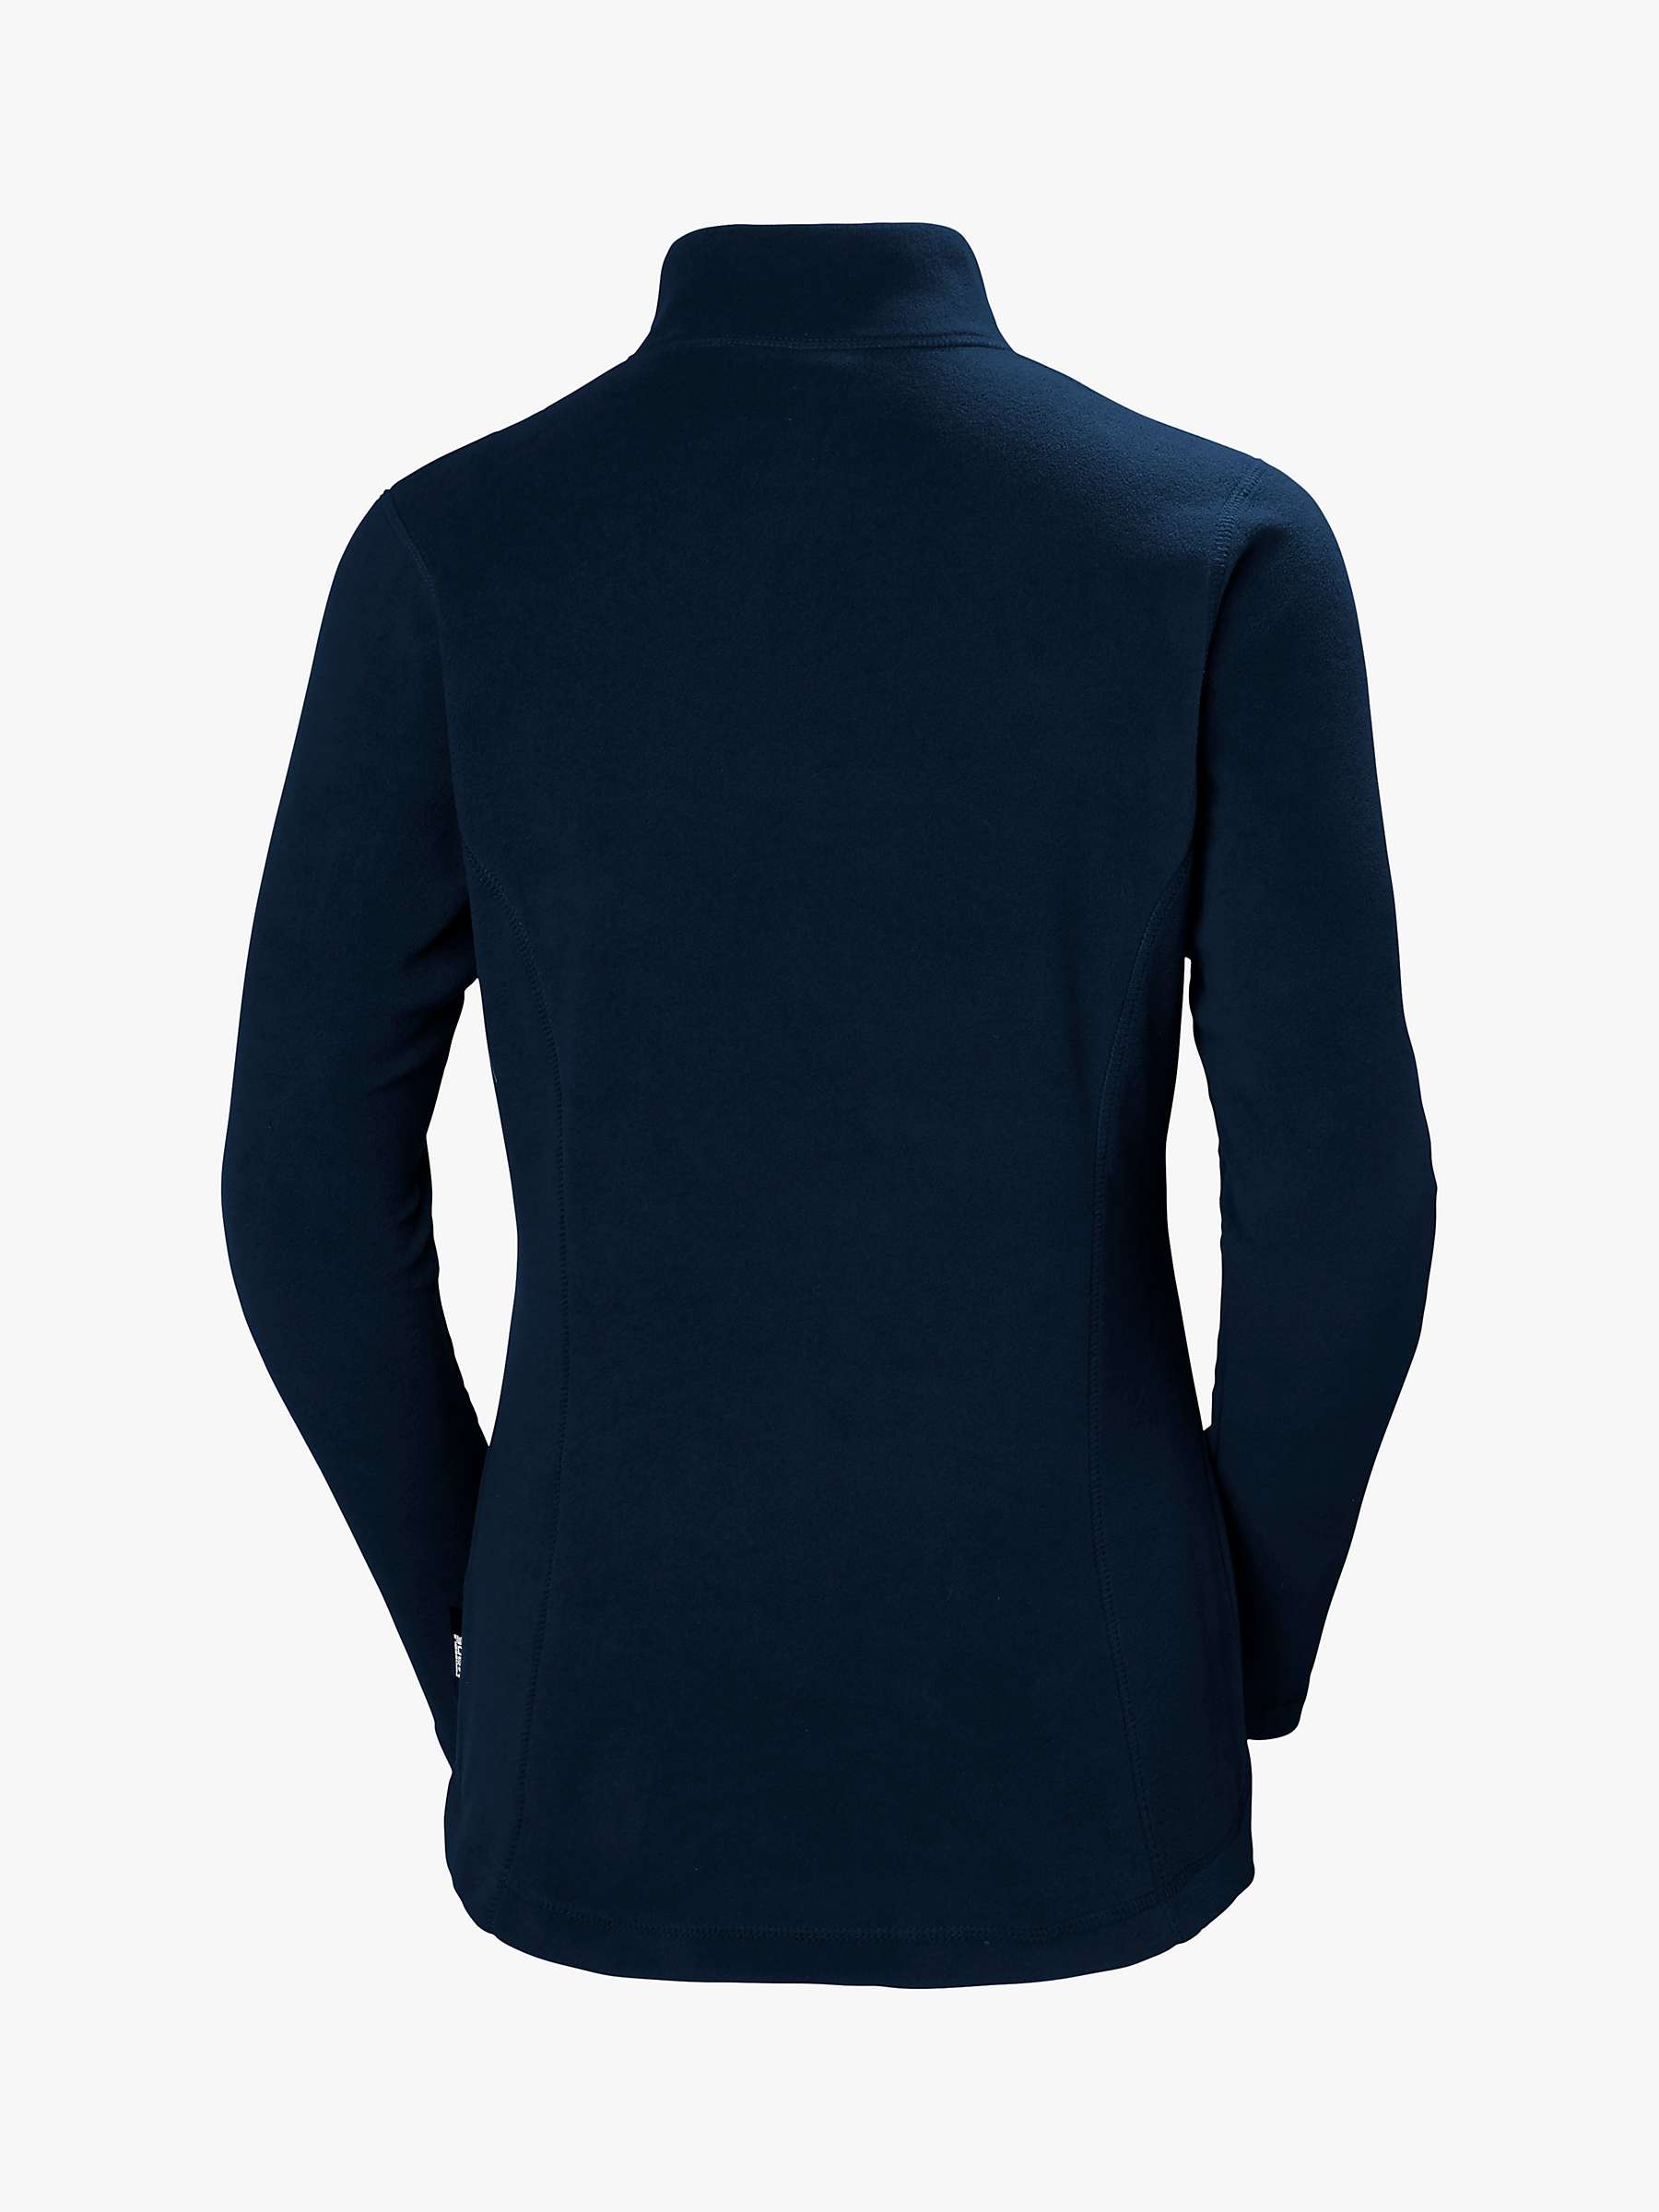 Buy Helly Hansen Daybreaker Fleece Half Zip Jacket Online at johnlewis.com